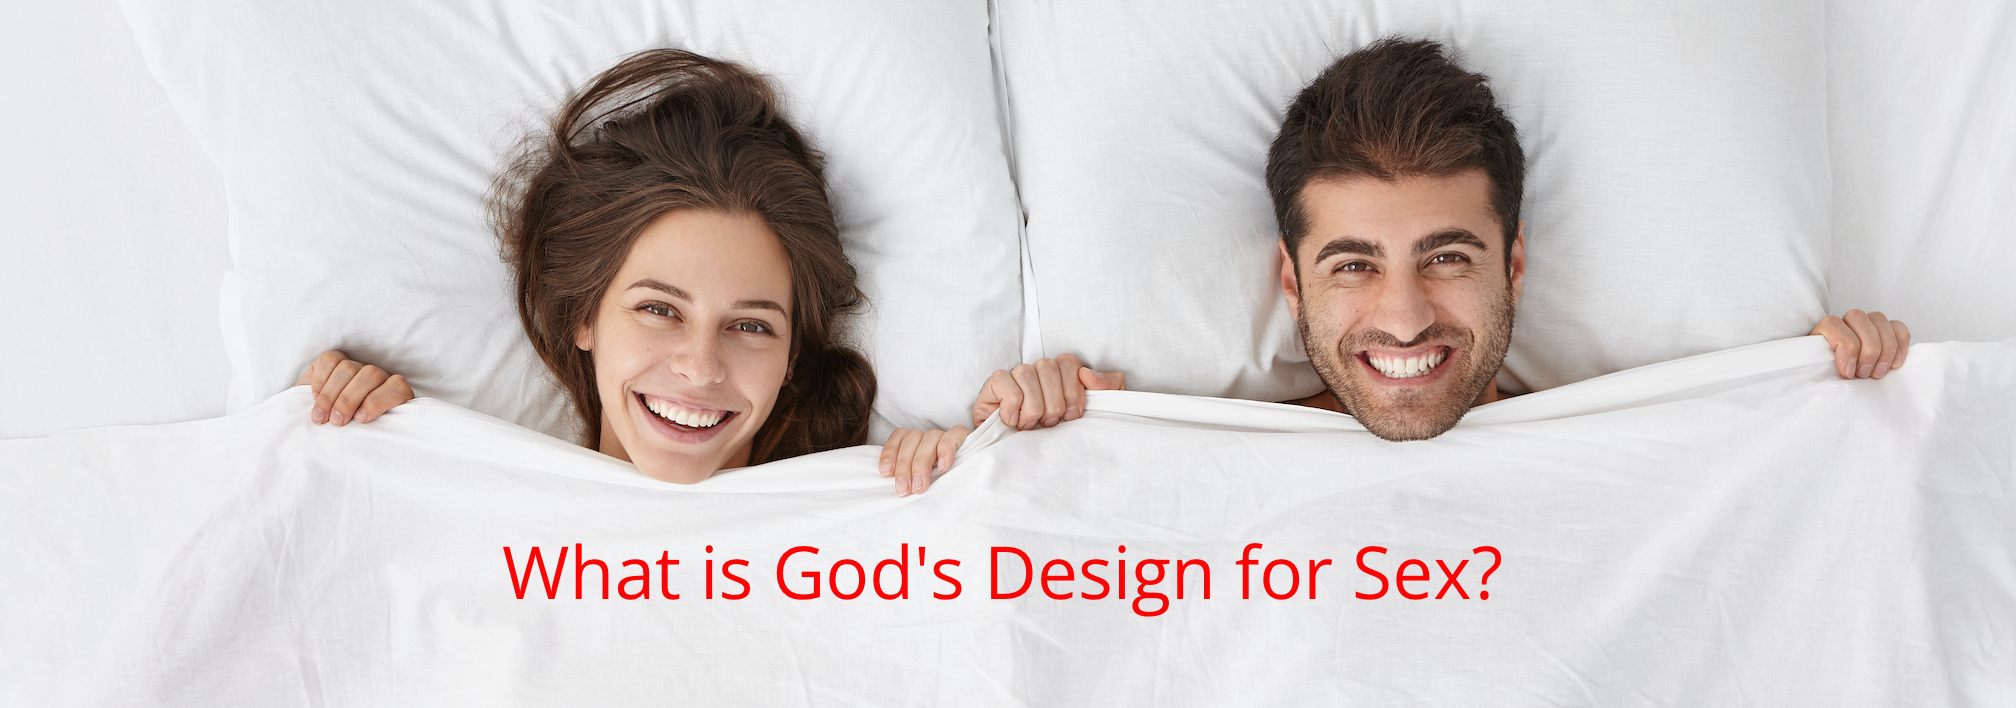 God's Design for Sex